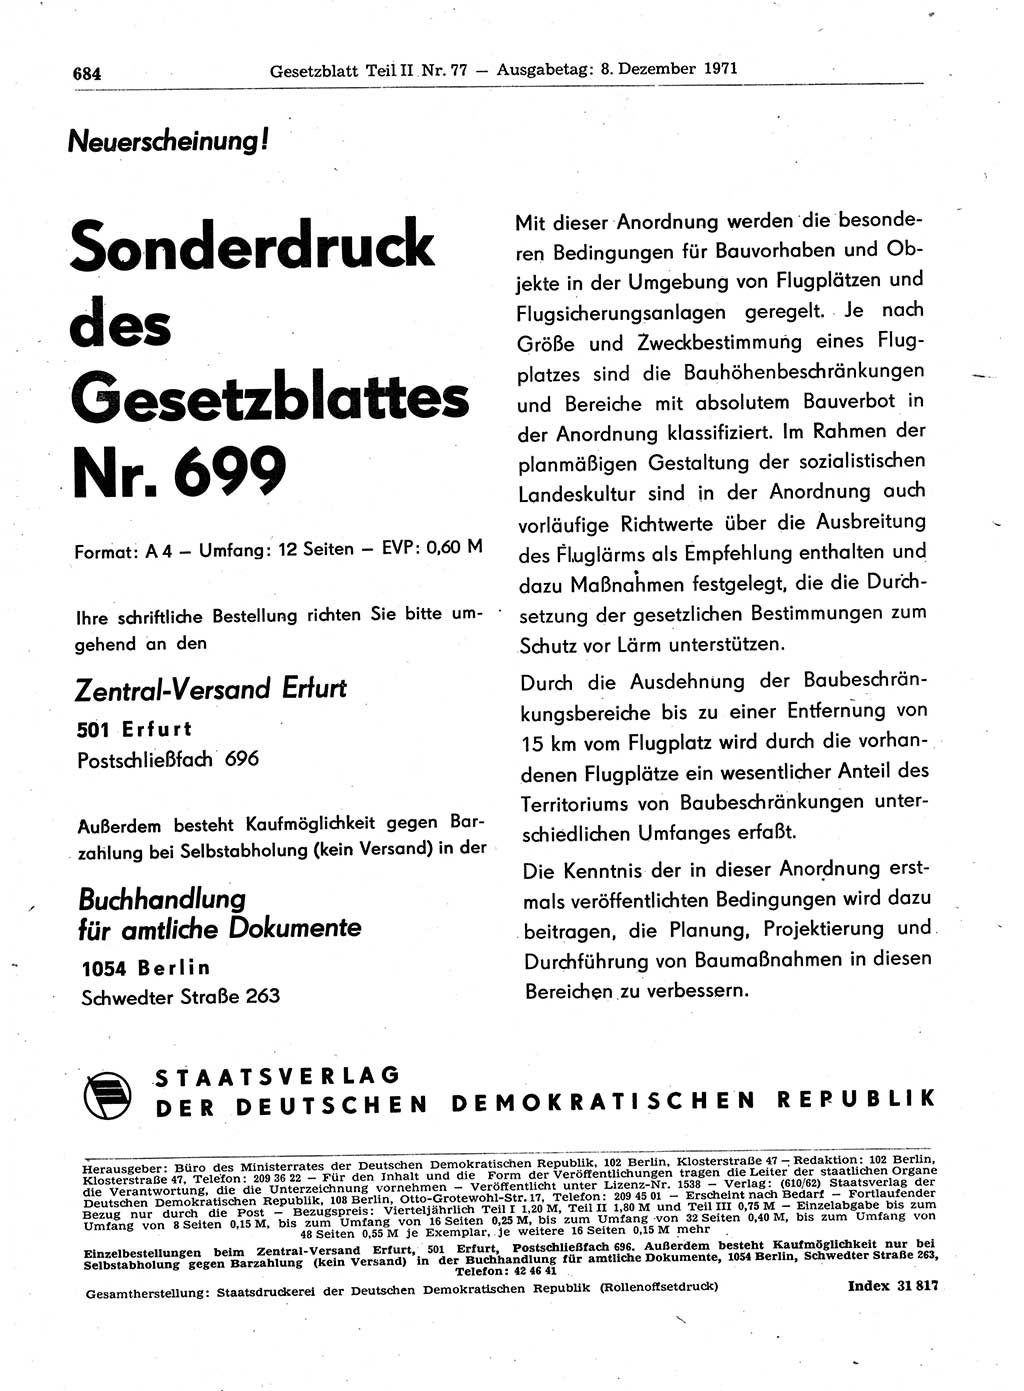 Gesetzblatt (GBl.) der Deutschen Demokratischen Republik (DDR) Teil ⅠⅠ 1971, Seite 684 (GBl. DDR ⅠⅠ 1971, S. 684)